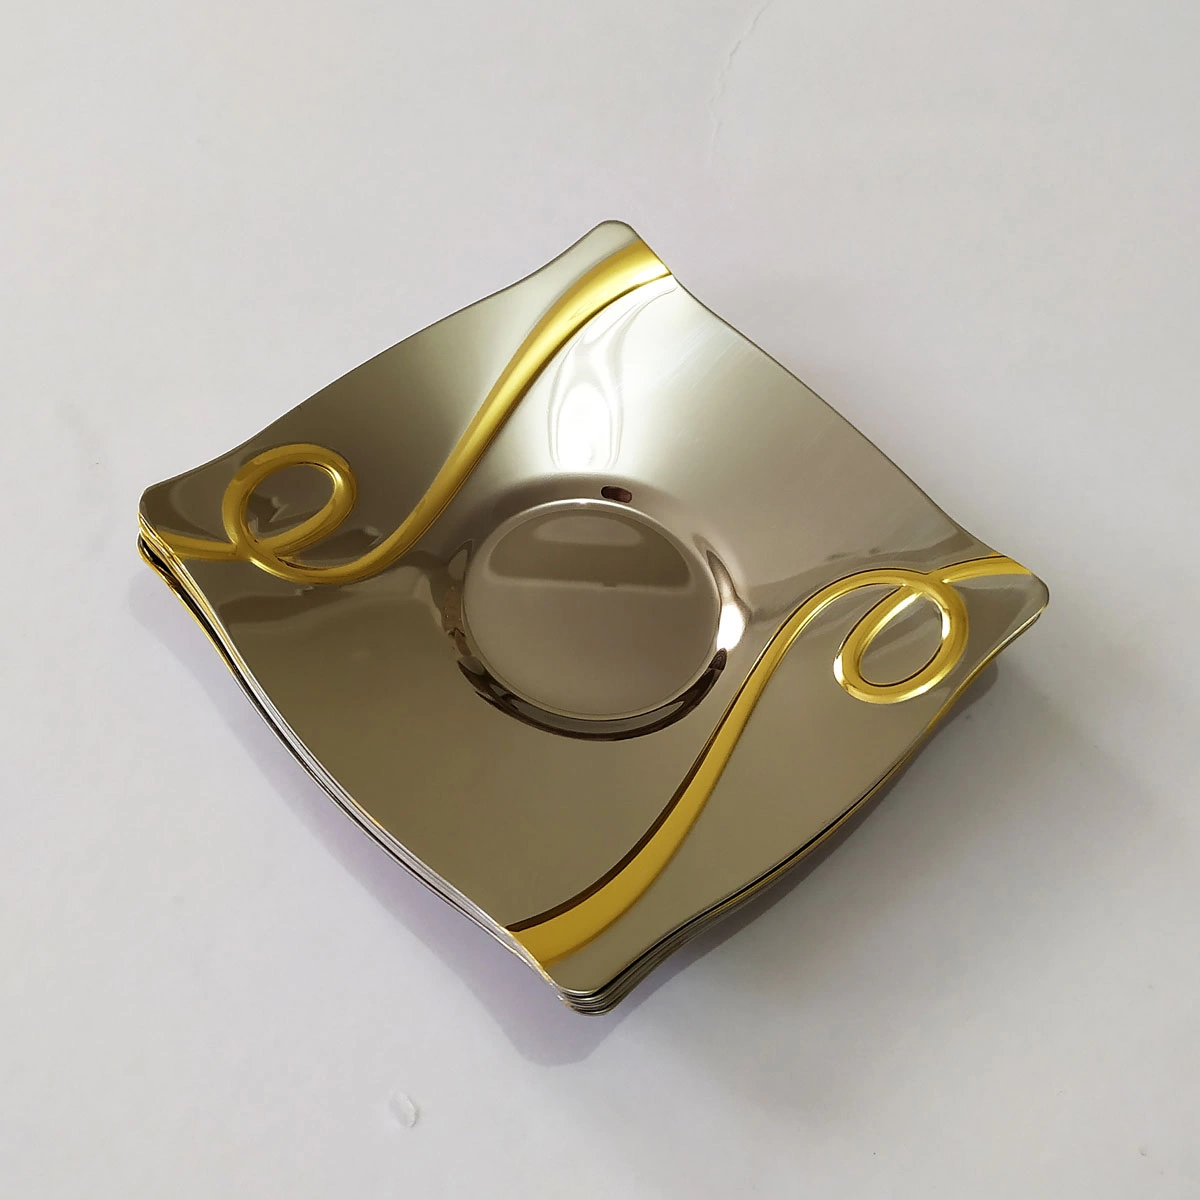 Tiamo İnna Desen Çelik Gold Detay Çay Tabağı - 6 Adet